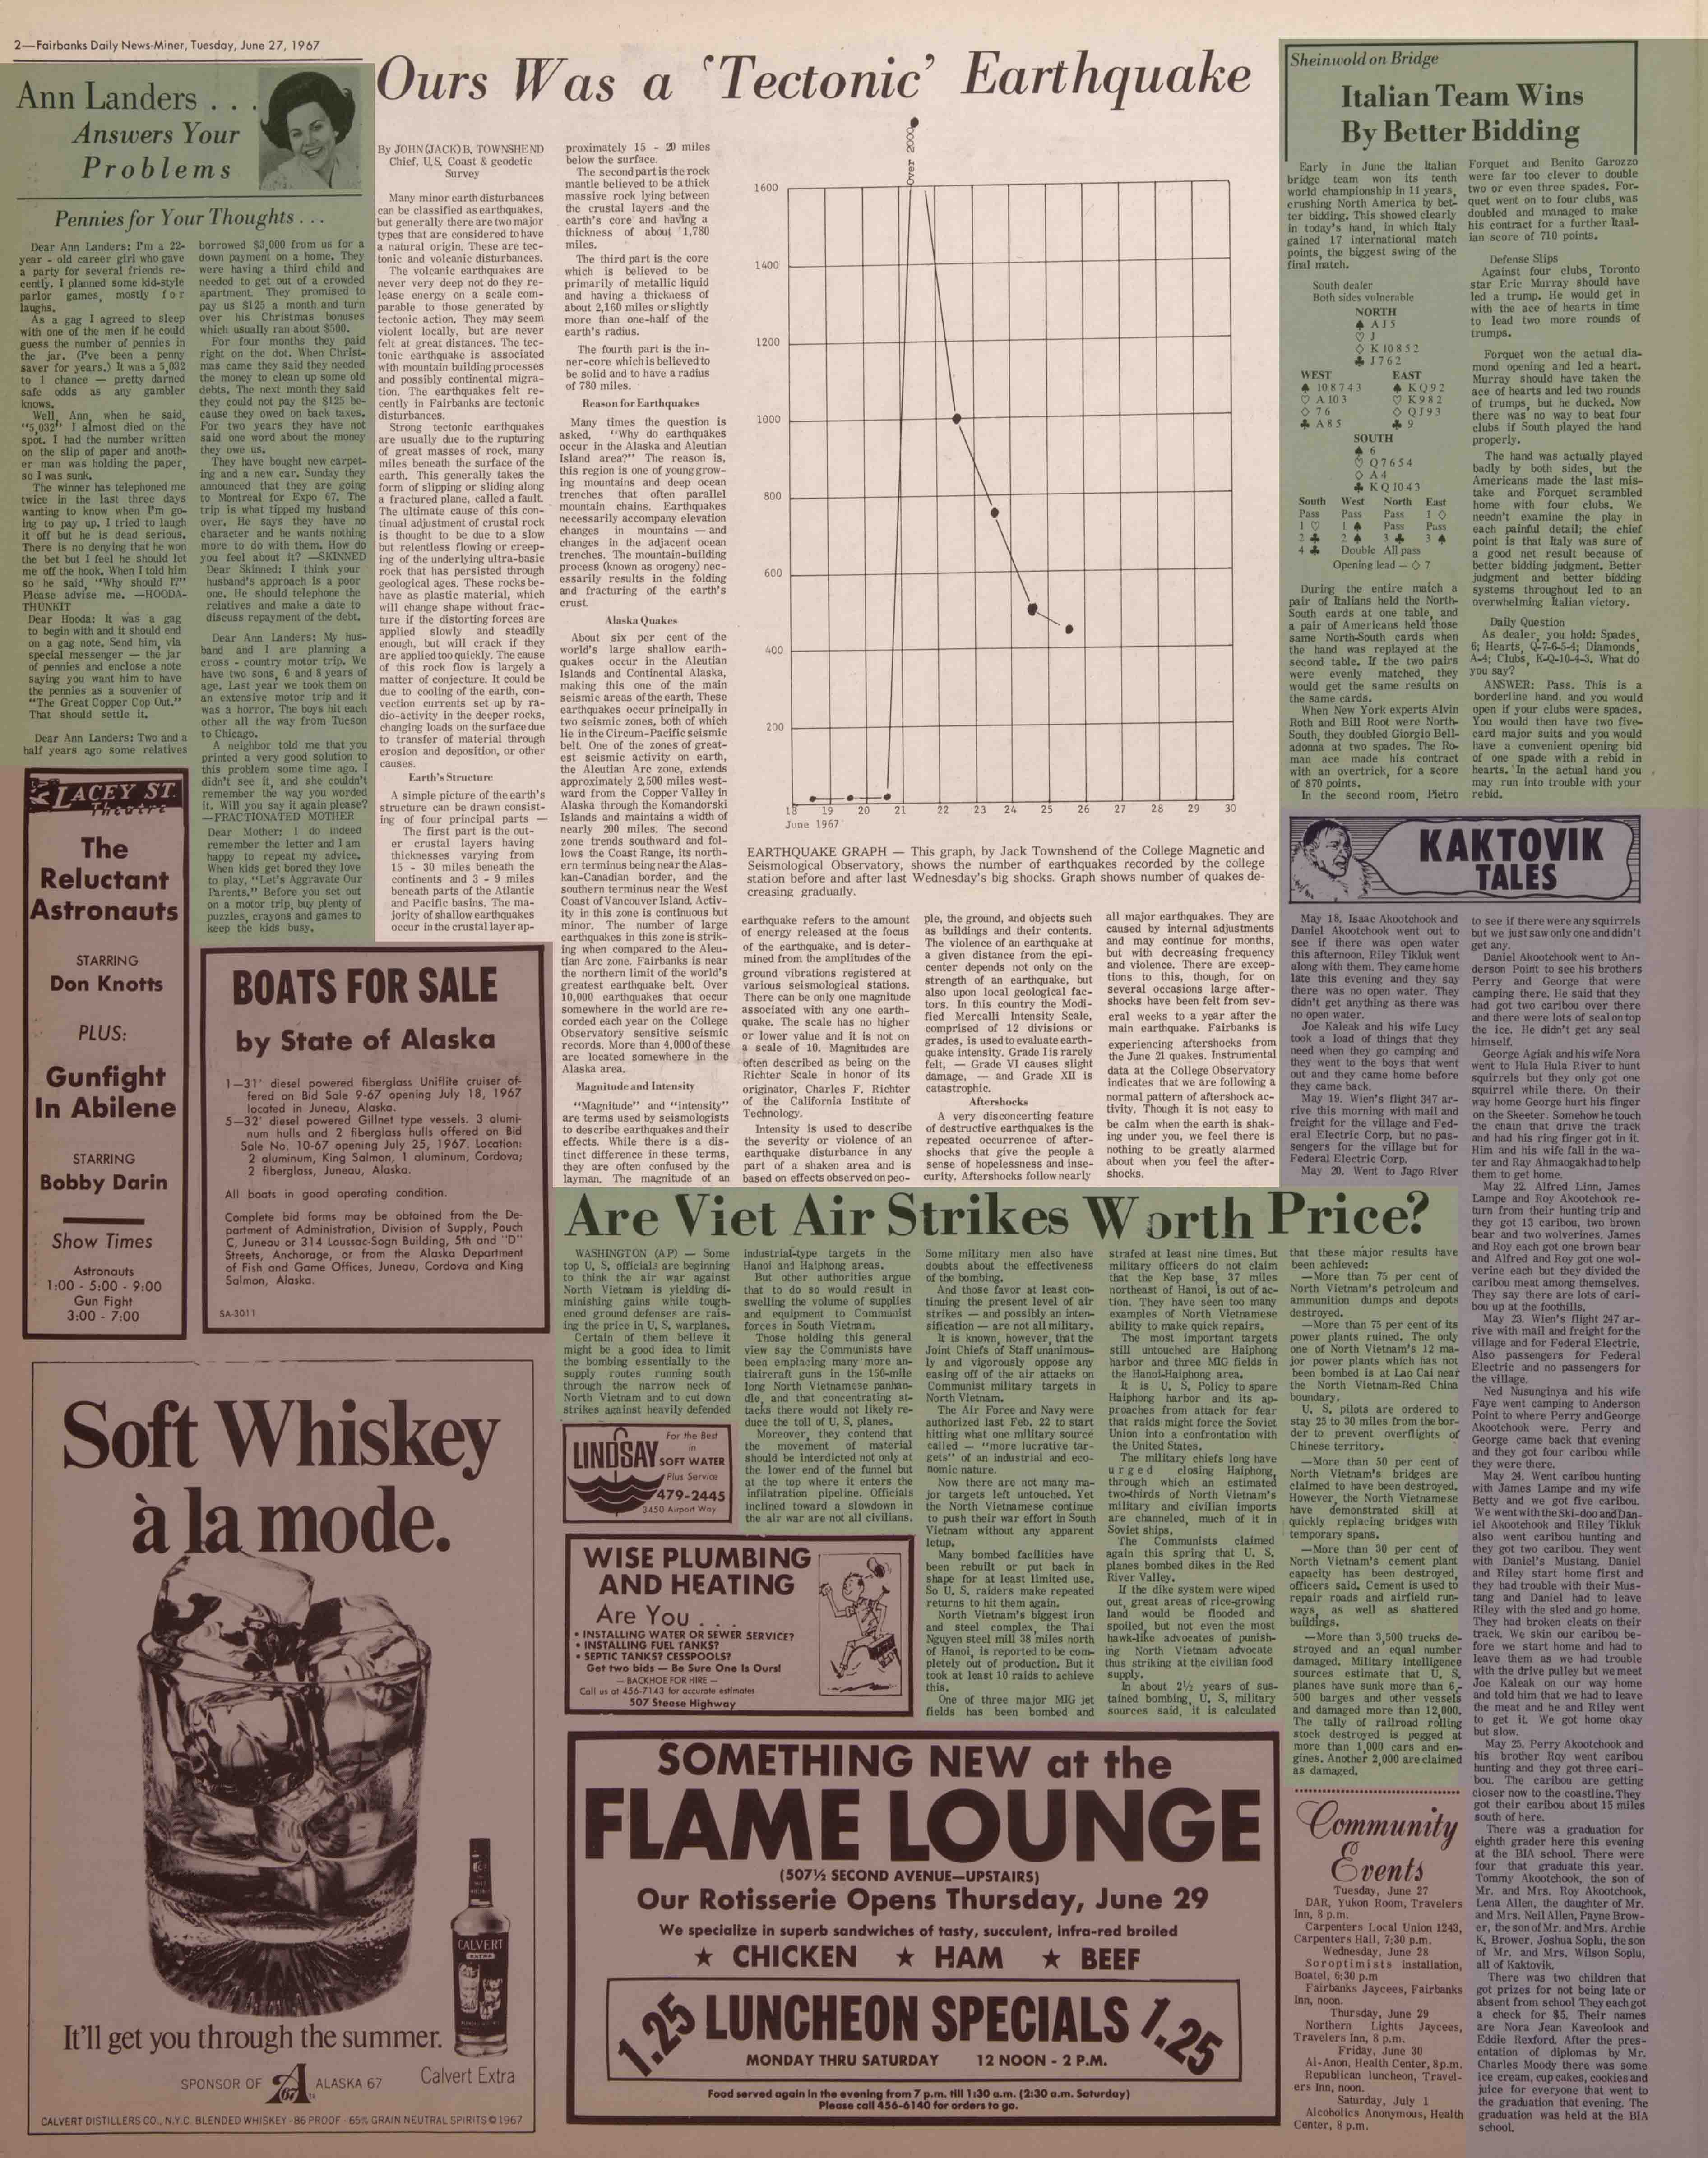 1967 June 27, Fairbanks Daily News-Miner (pg 2)